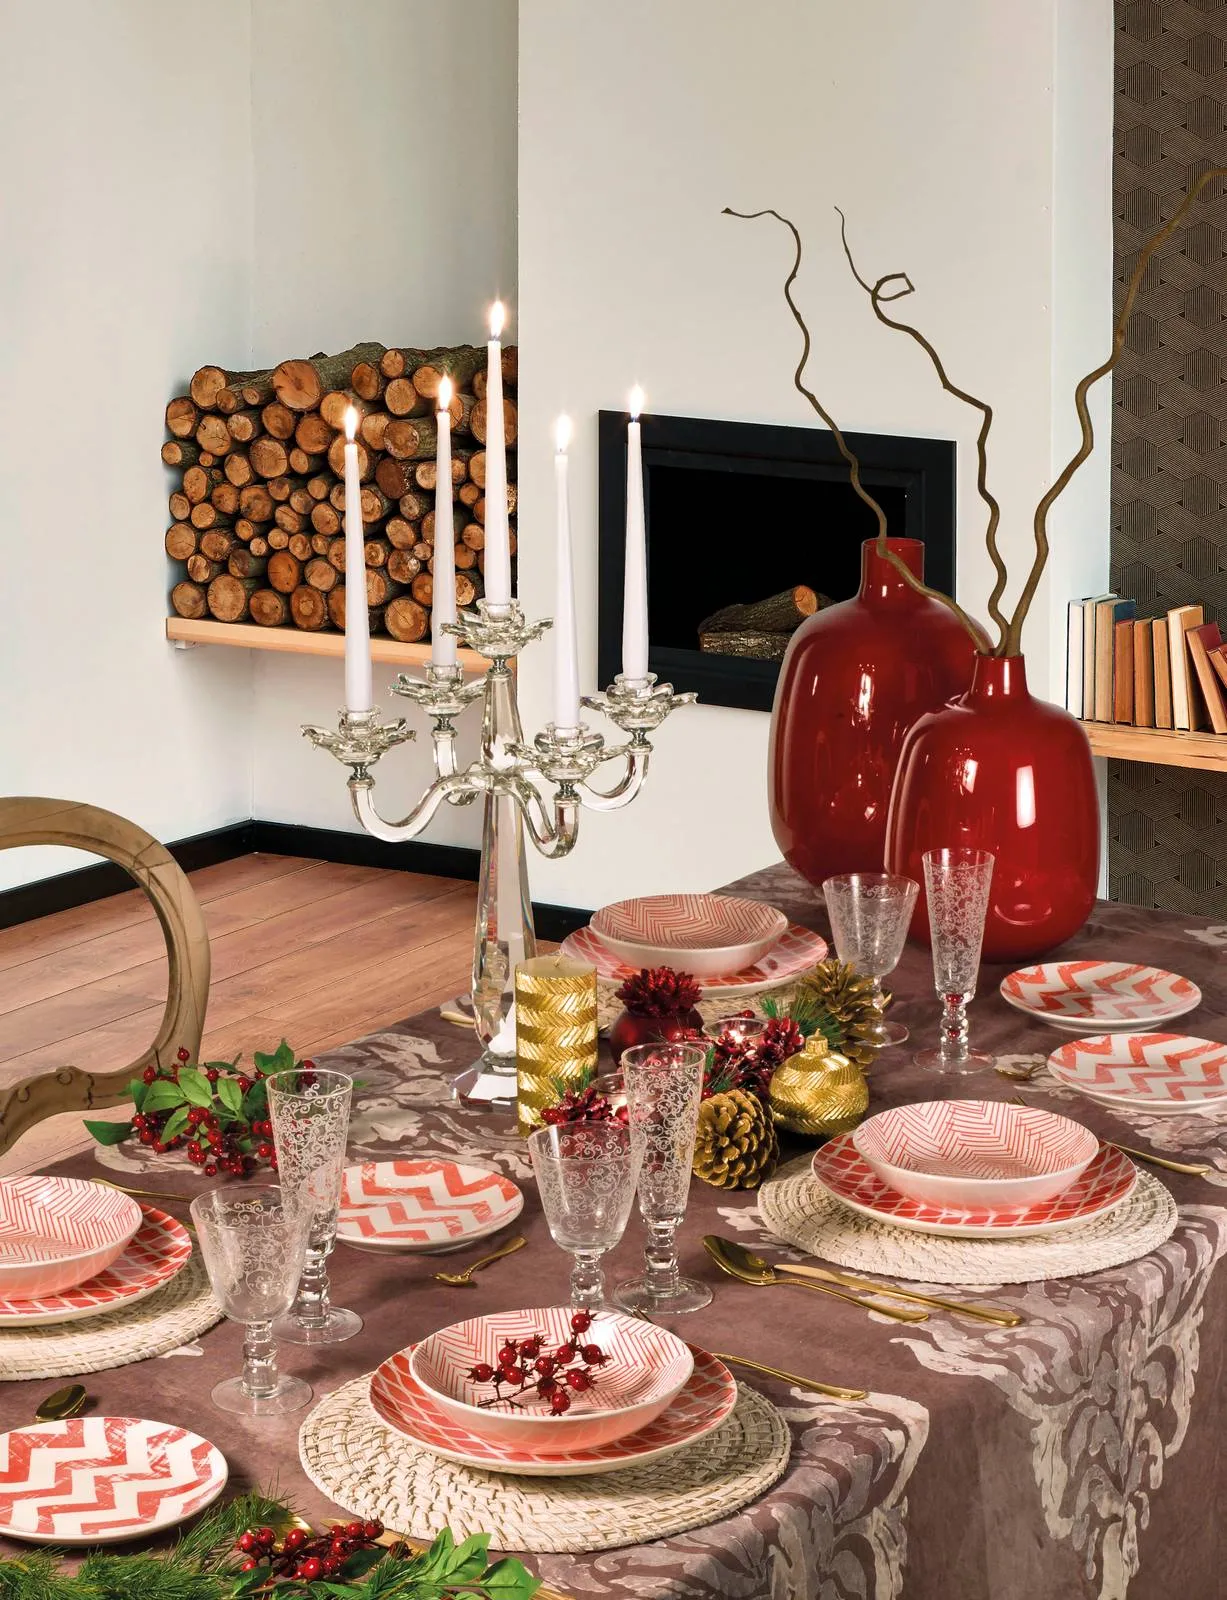 Tavola di Natale: piatti e decorazioni oro, rosso, bianco - Cose